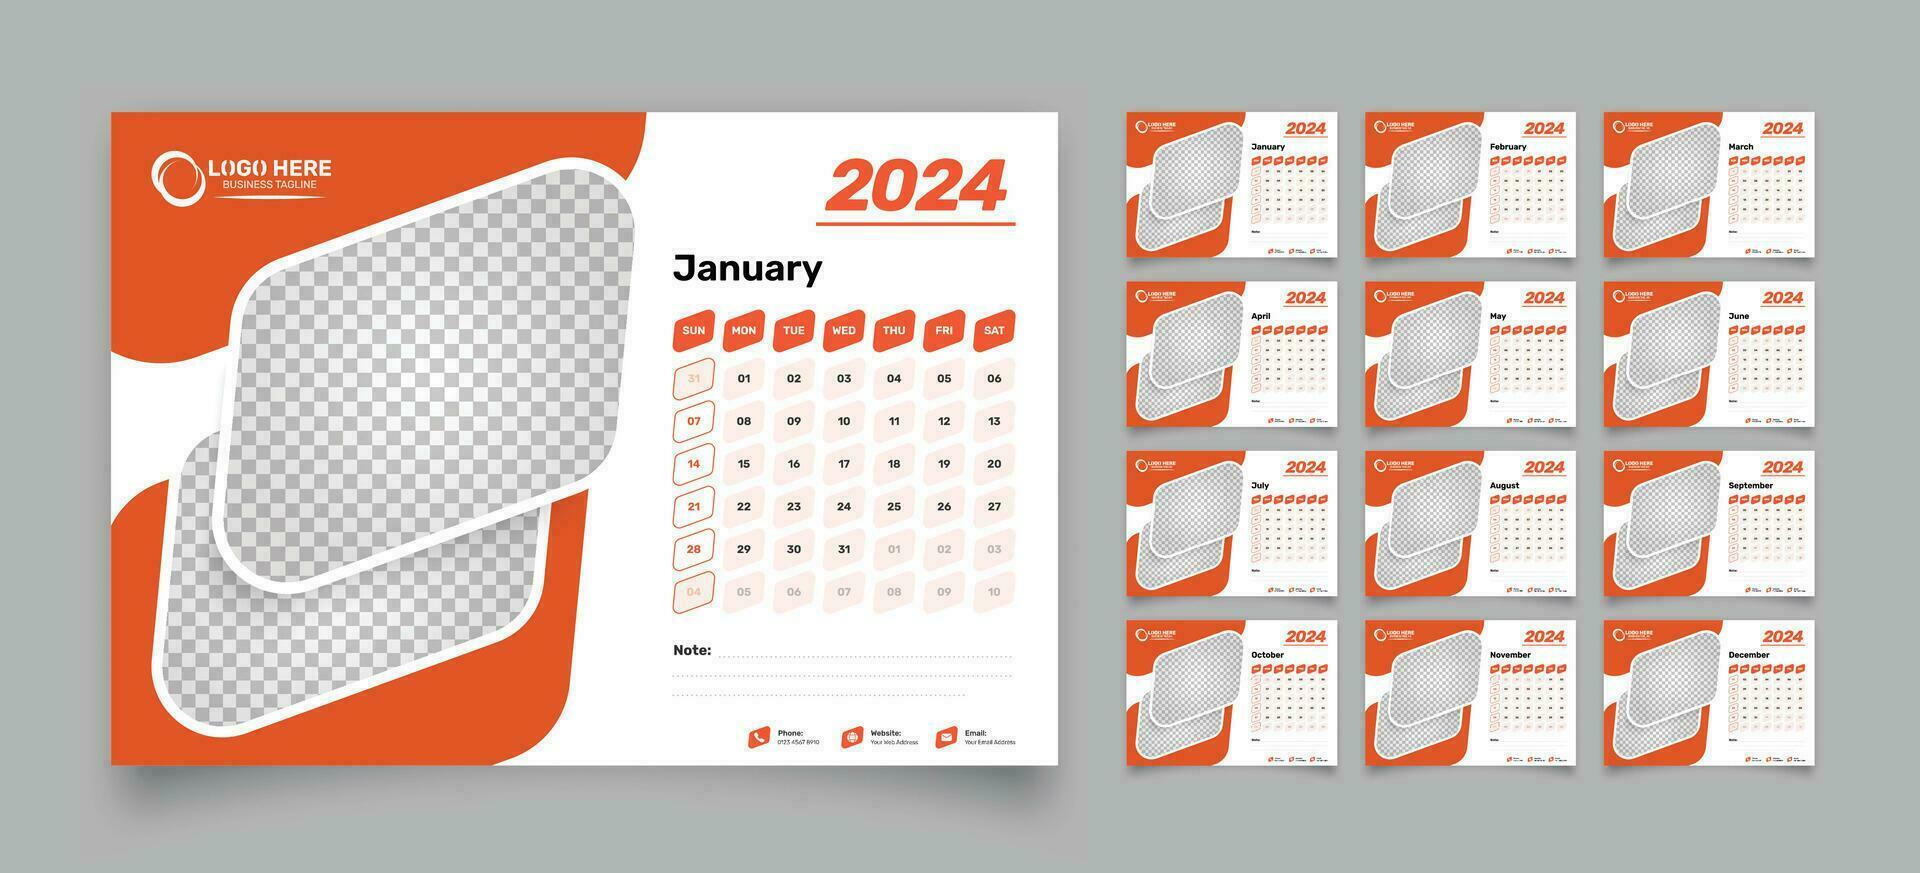 abstrakt 12 sidor skrivbord kalender design för 2024 med exakt datum formatera och två bild Platshållare vektor